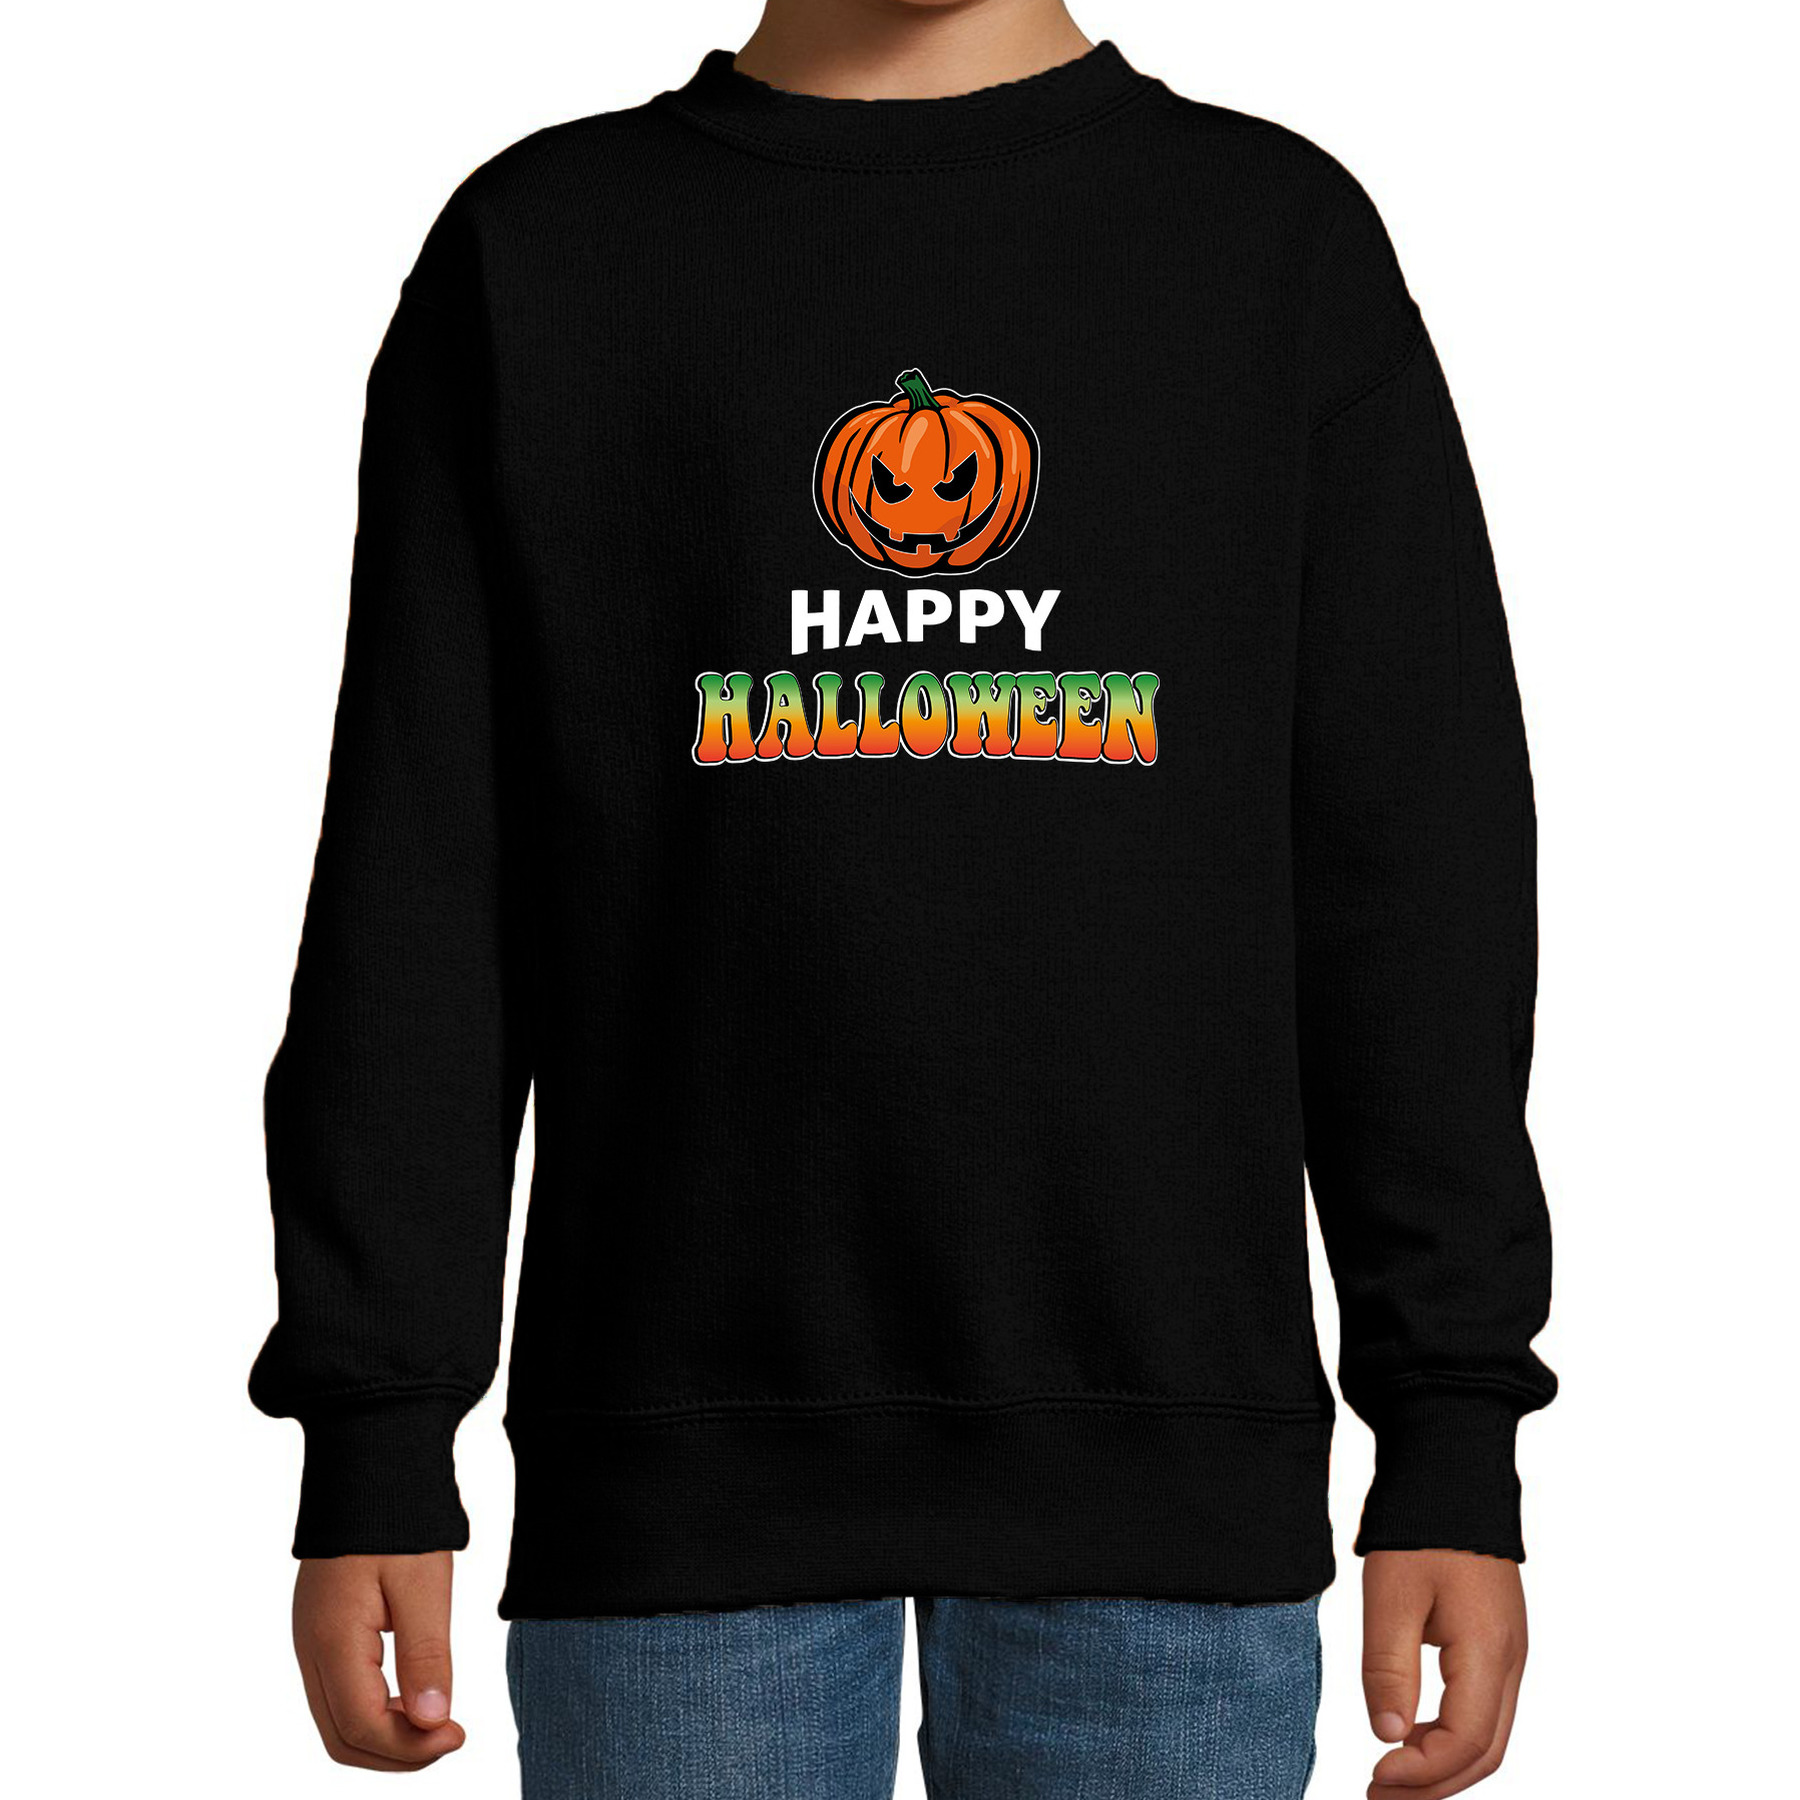 Halloween - Pompoen / happy halloween verkleed sweater zwart voor kinderen